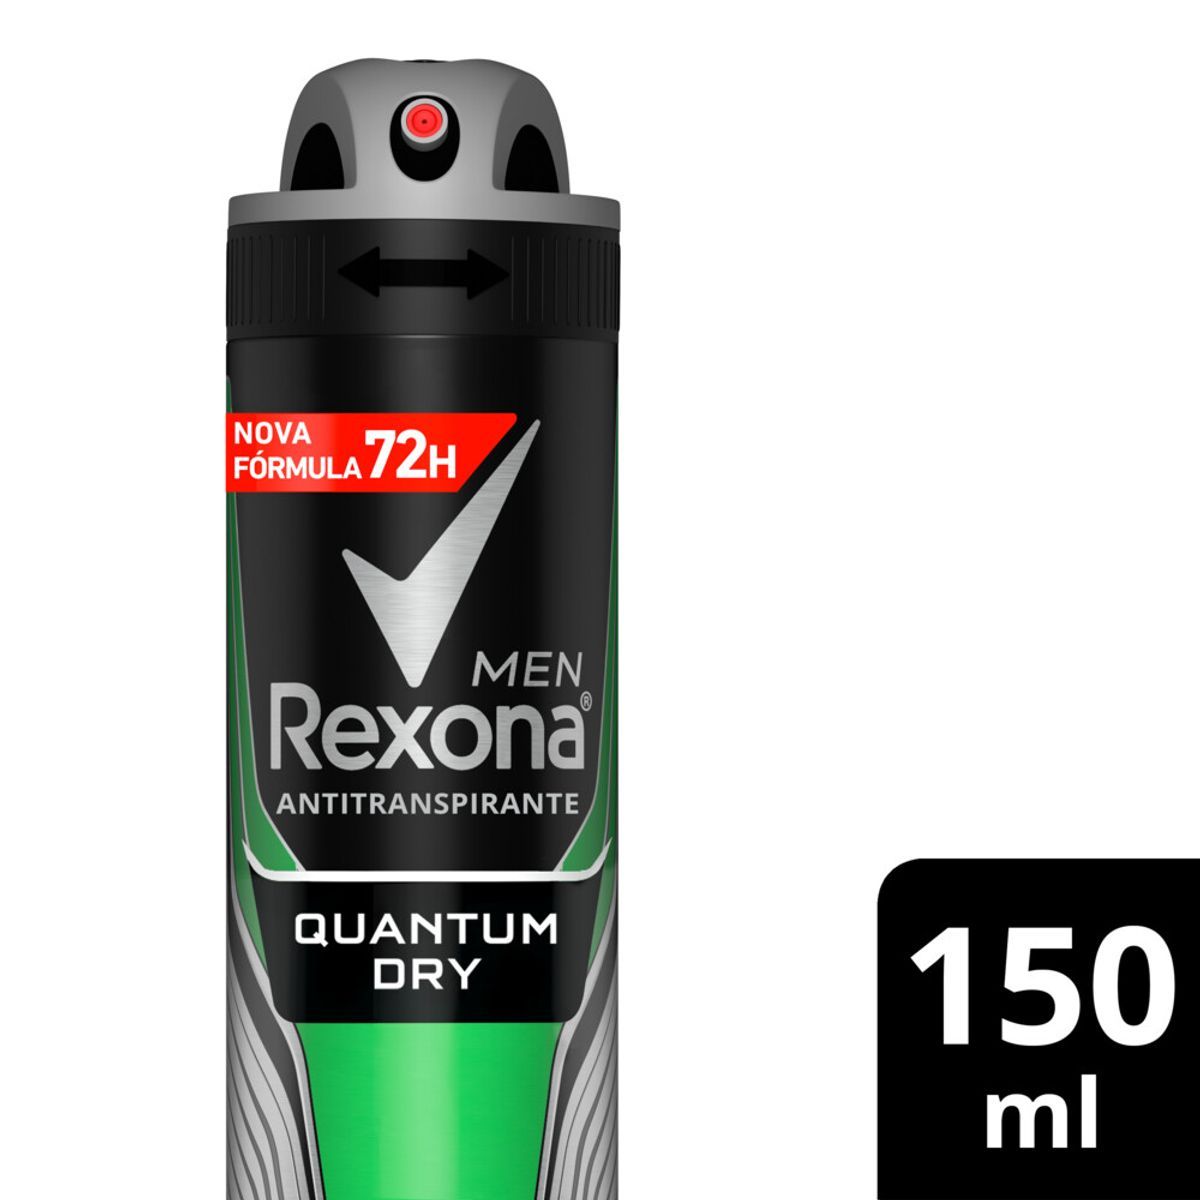 Desodorante Antitranspirante Aerosol Masculino Rexona Quantum Dry 72 horas 150ml image number 1